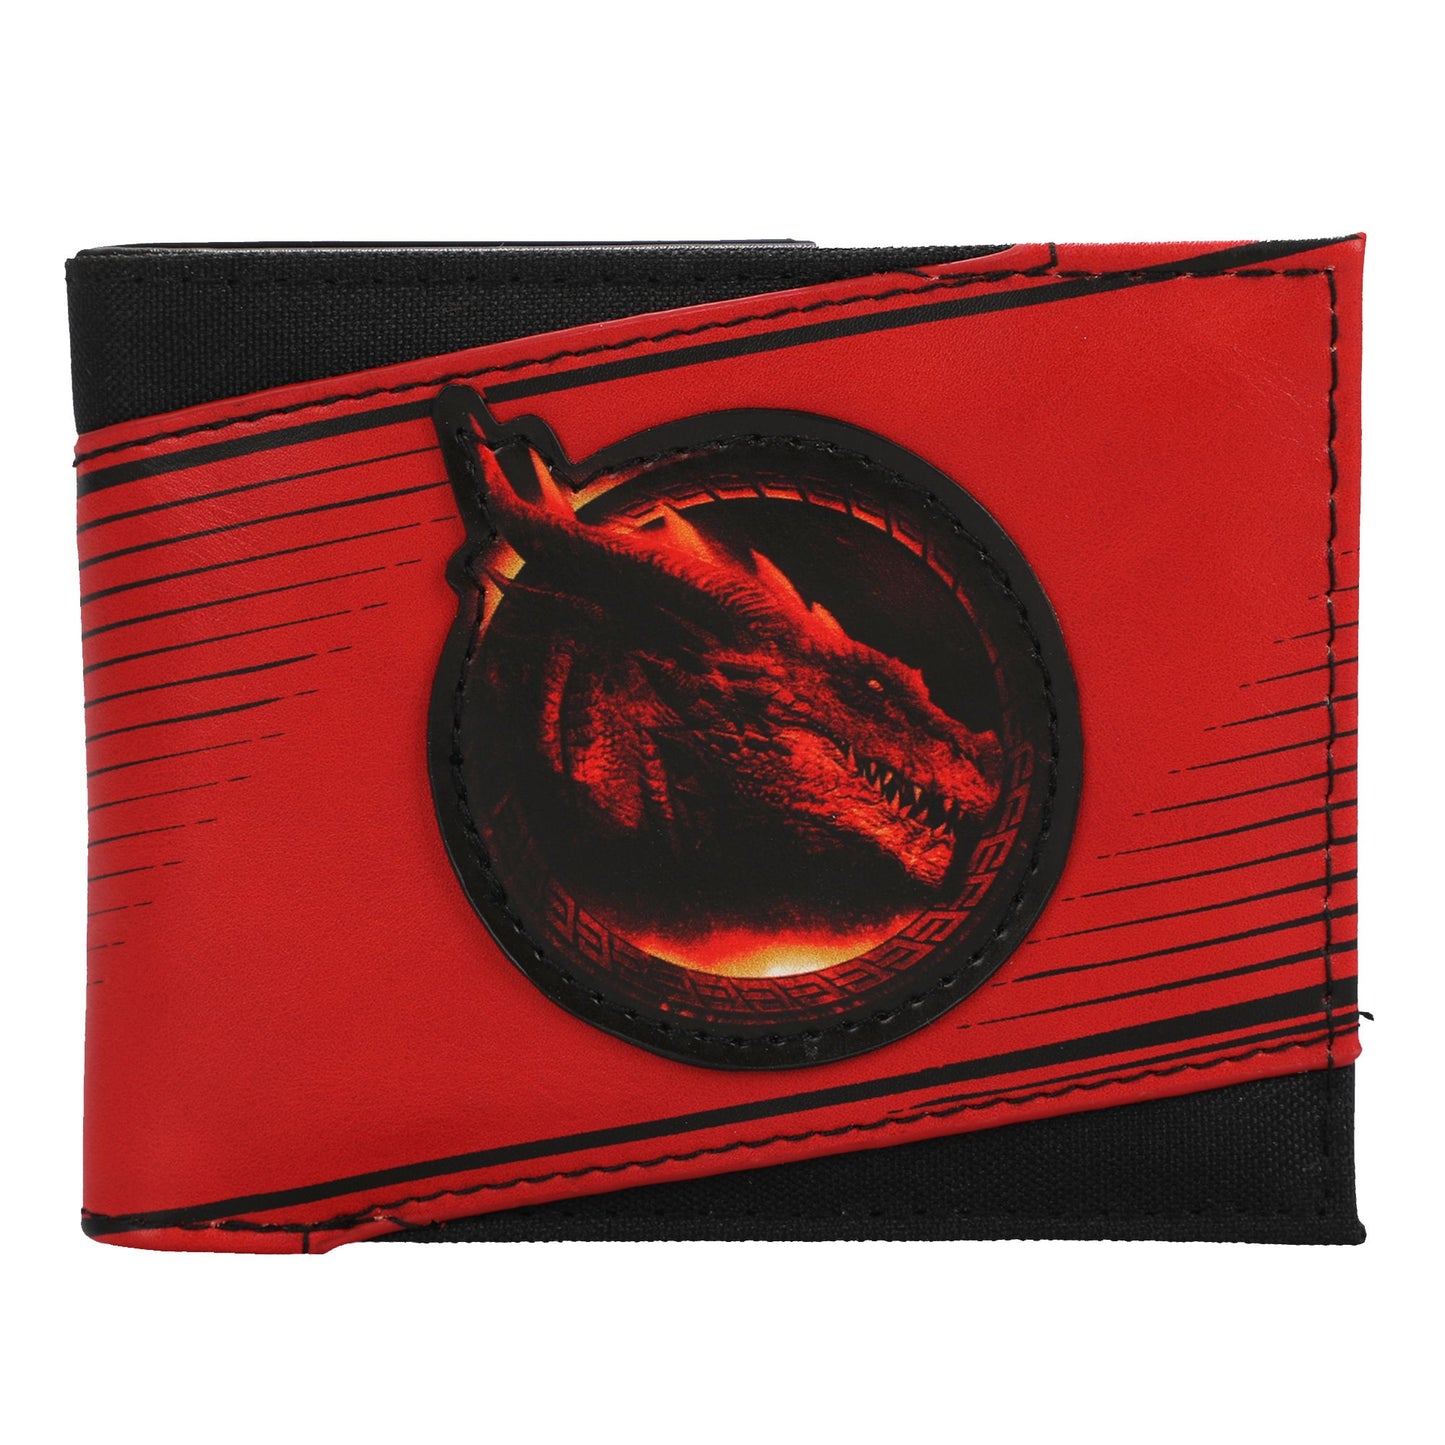 Donjons &amp; Dragons Portefeuille en nylon imprimé dragon rouge